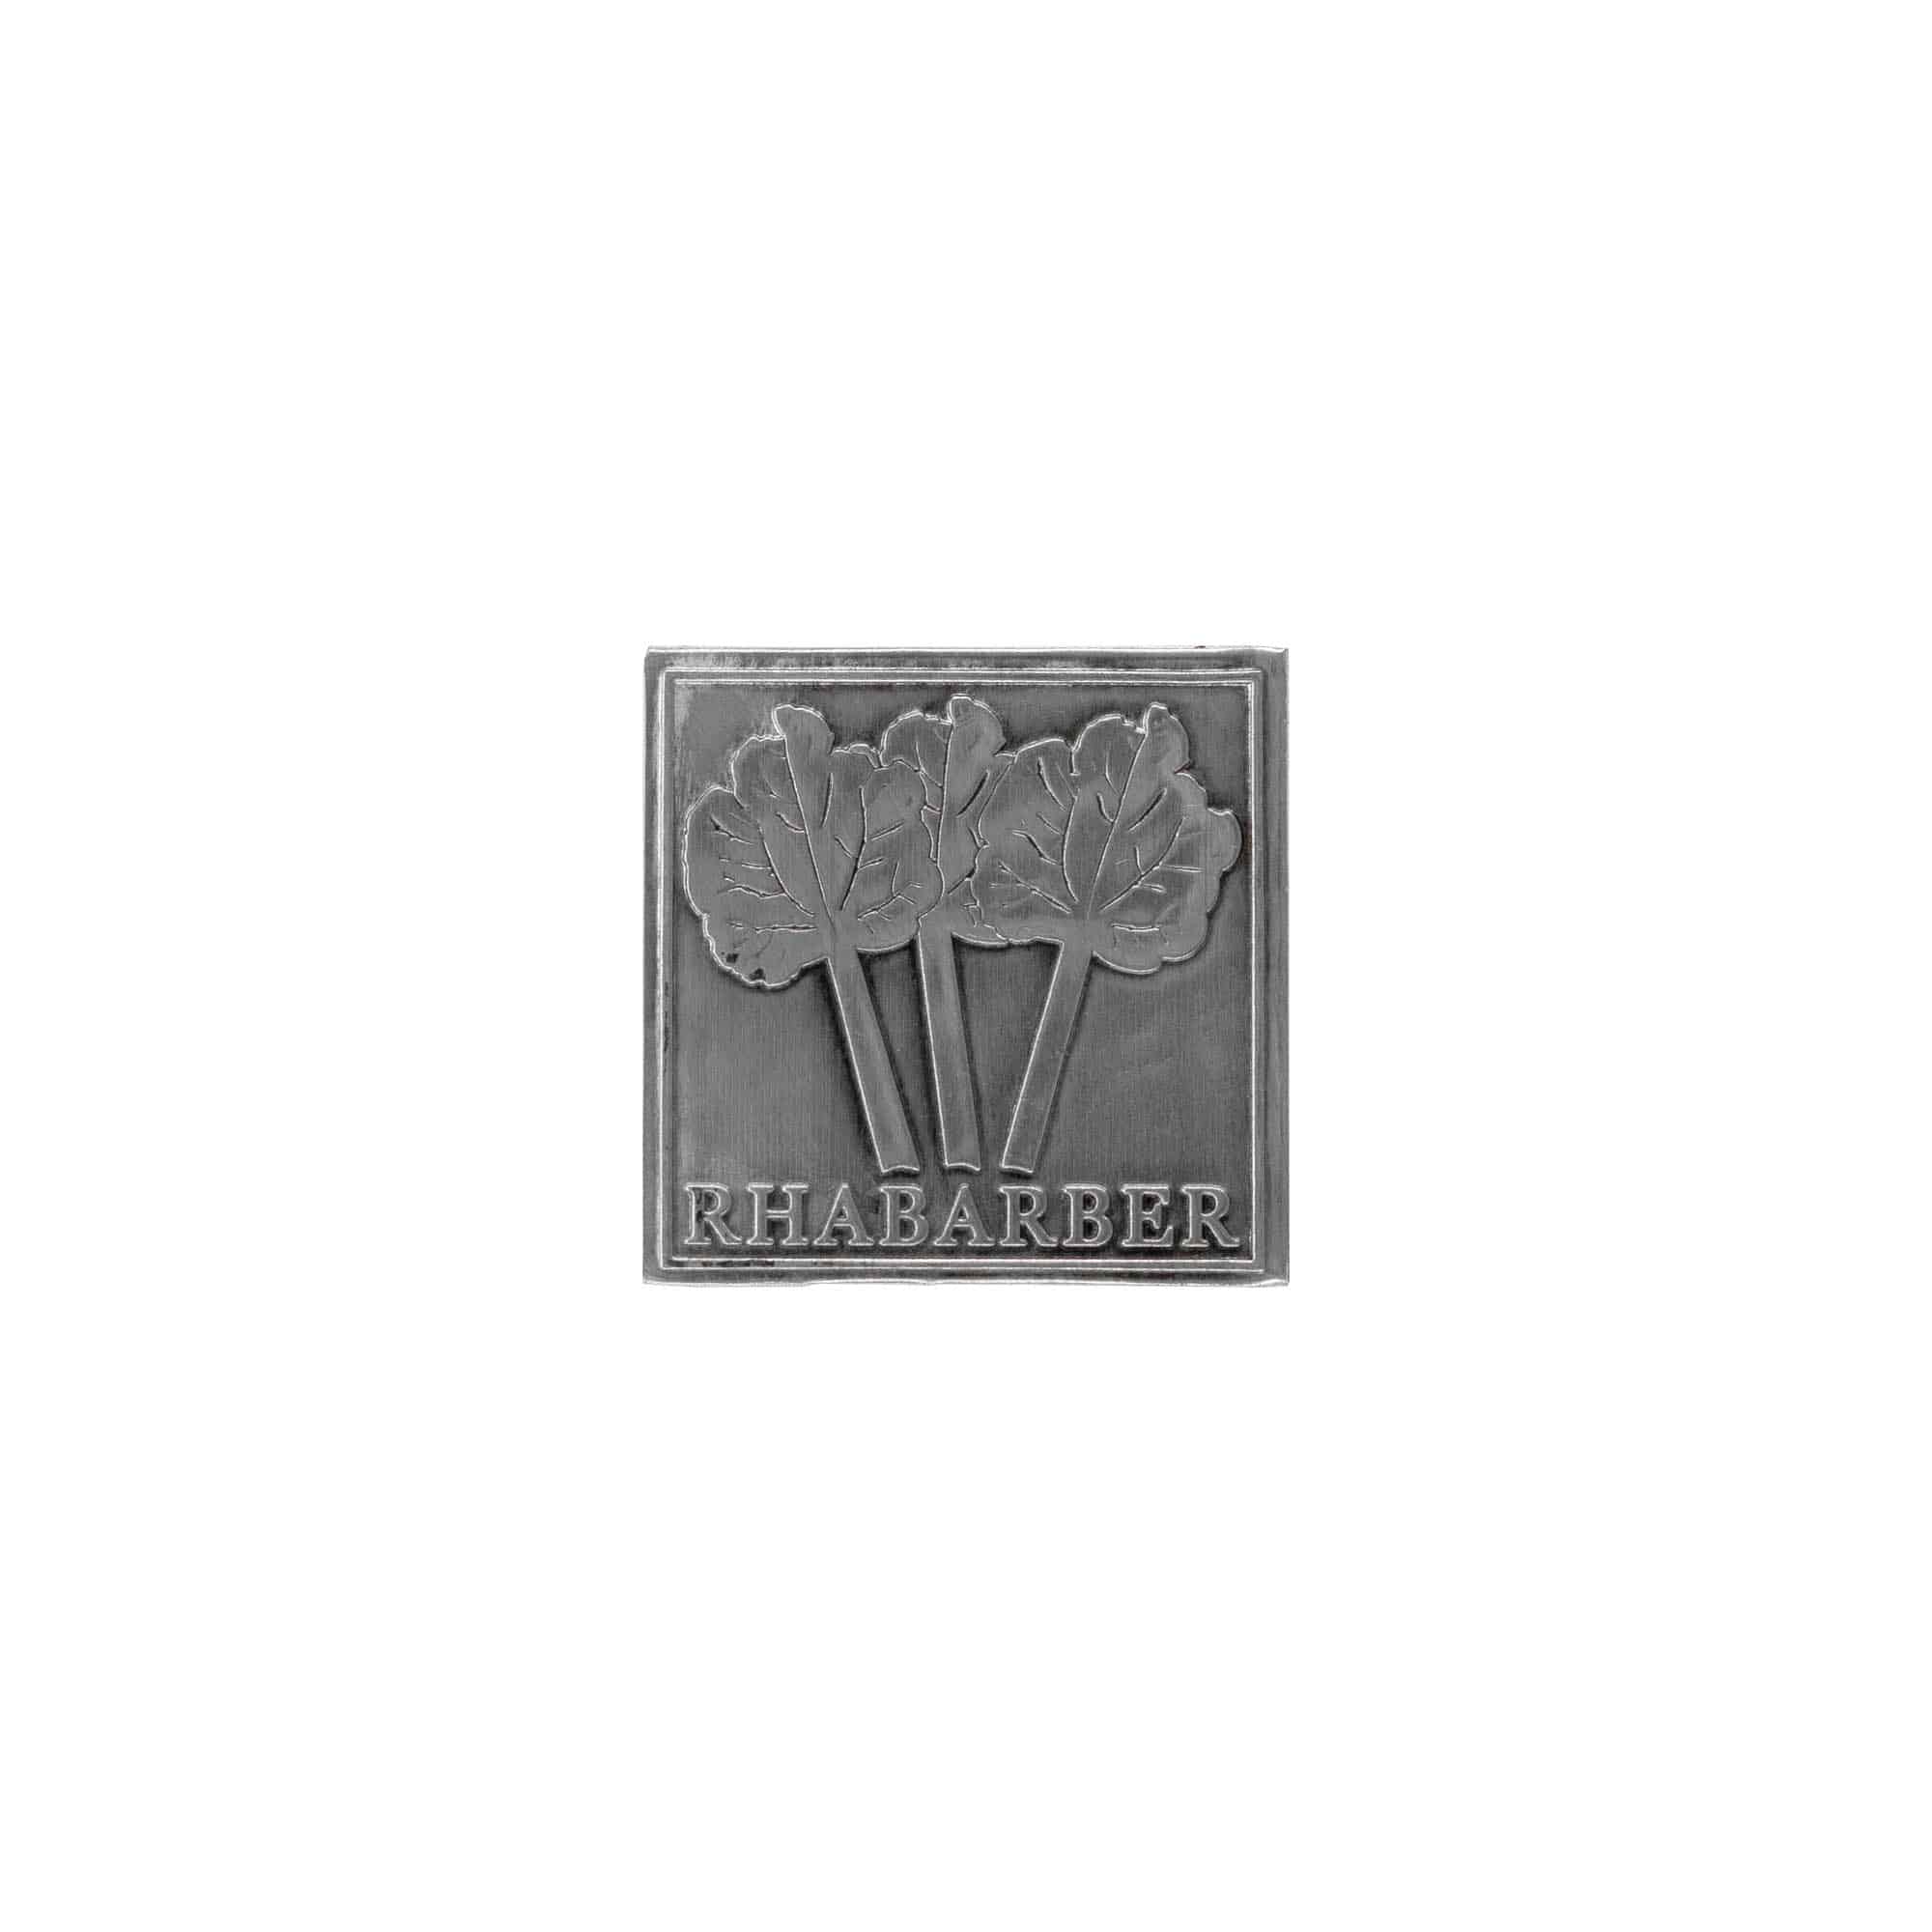 Cínový štítek 'Rebarbora', čtvercový, kov, stříbrný